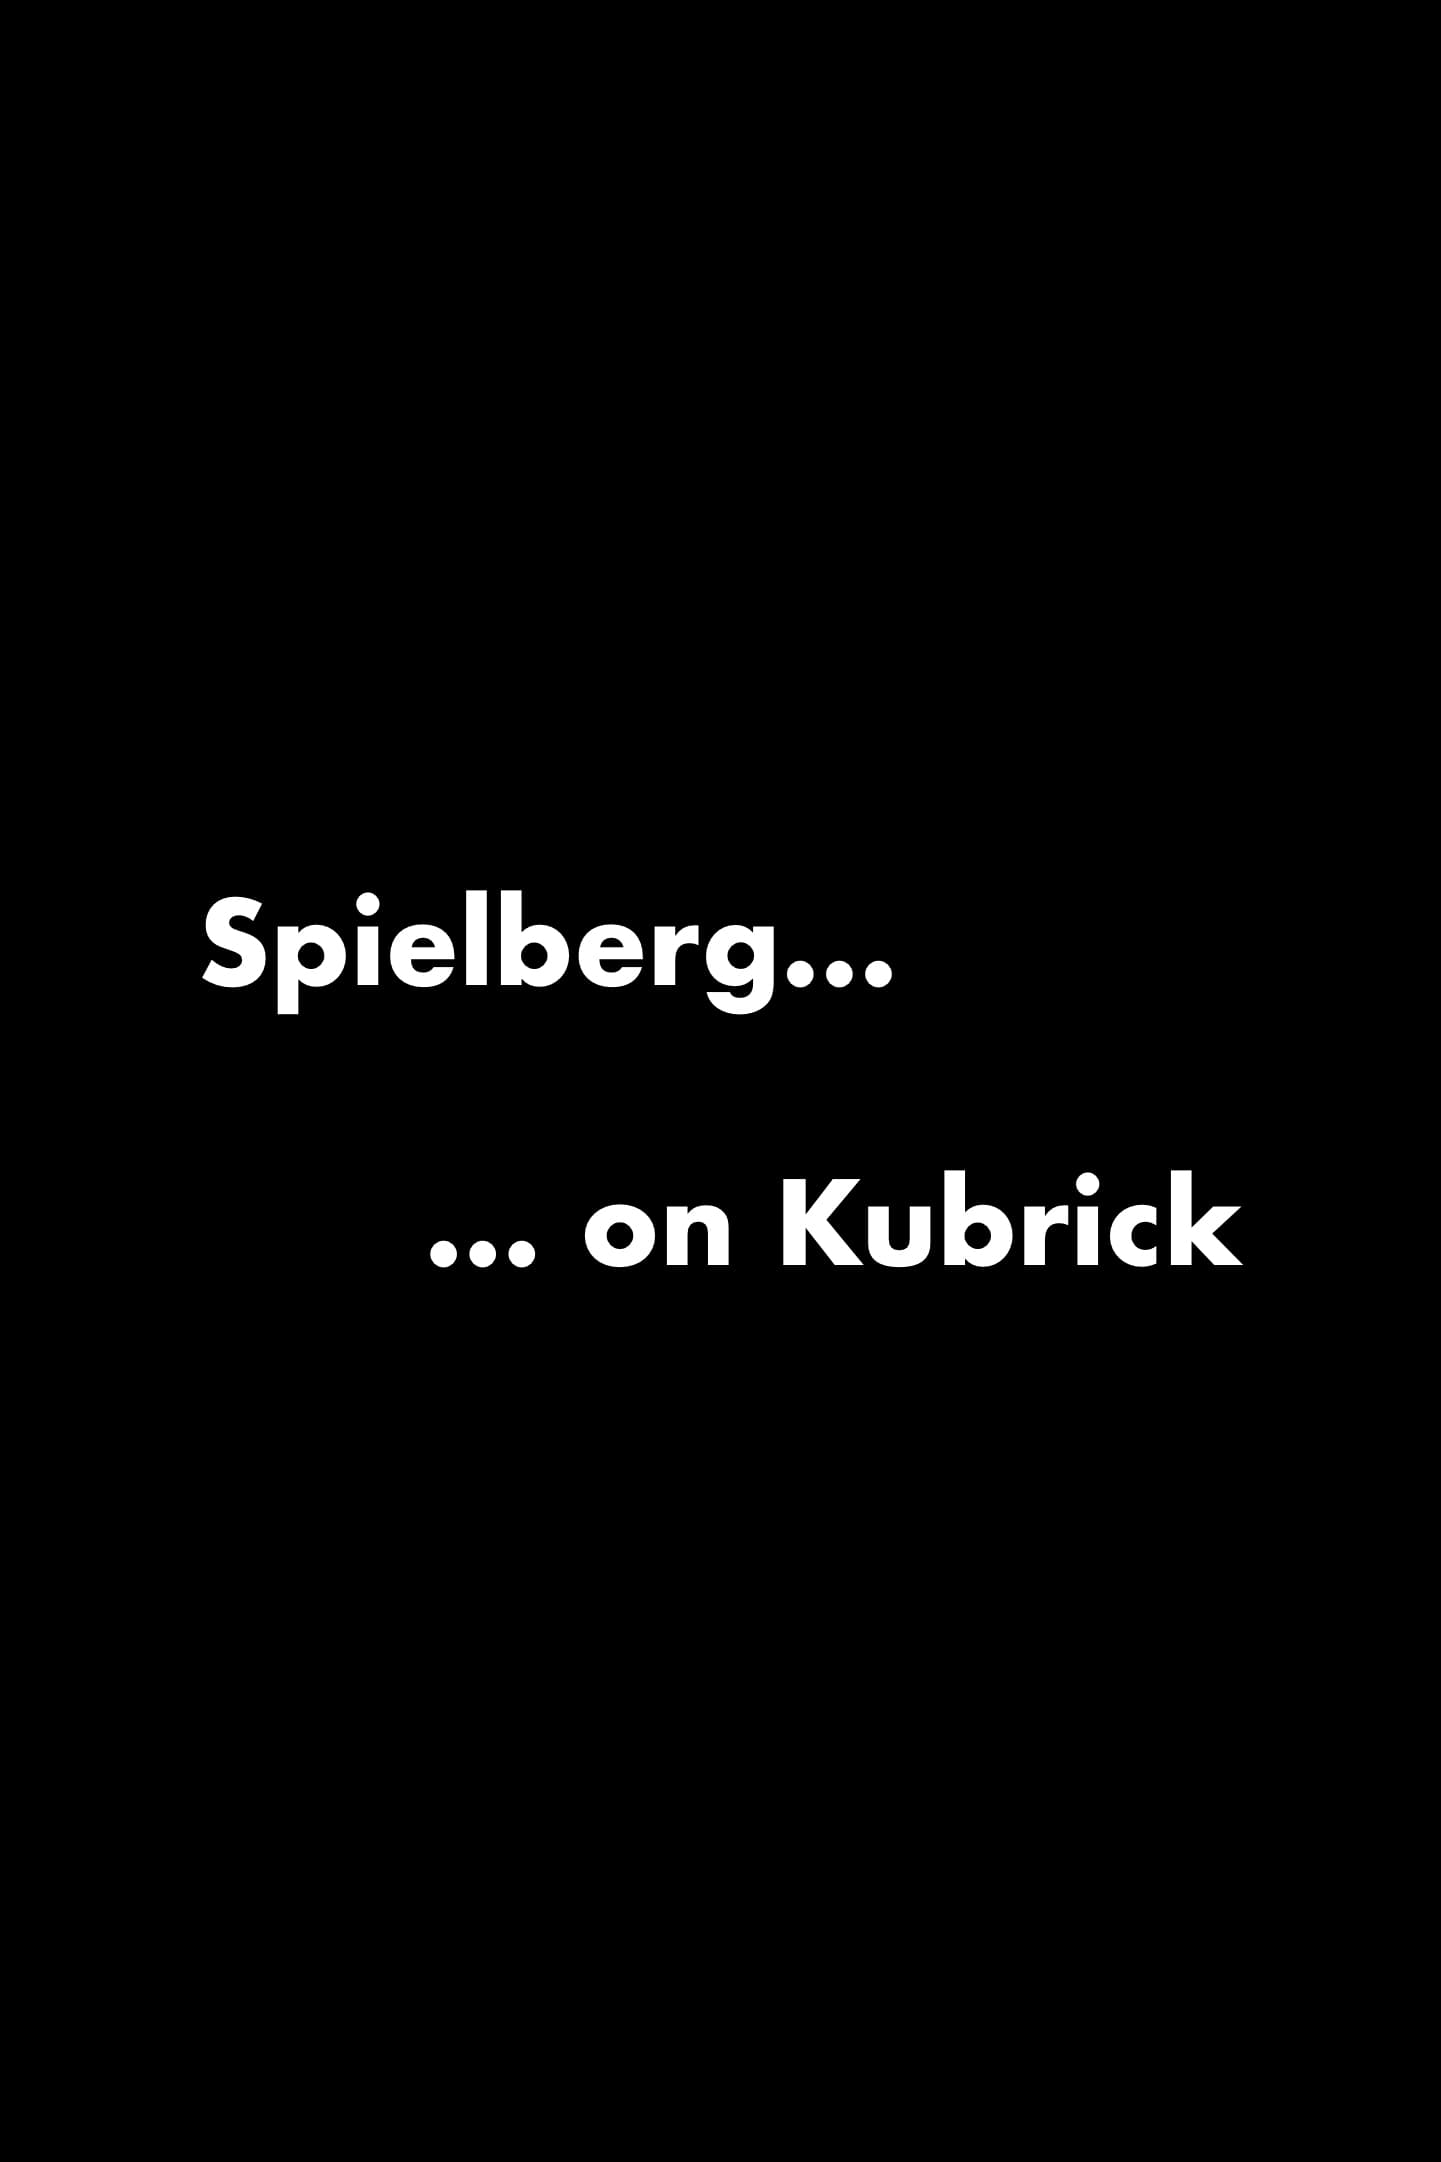 Spielberg on Kubrick